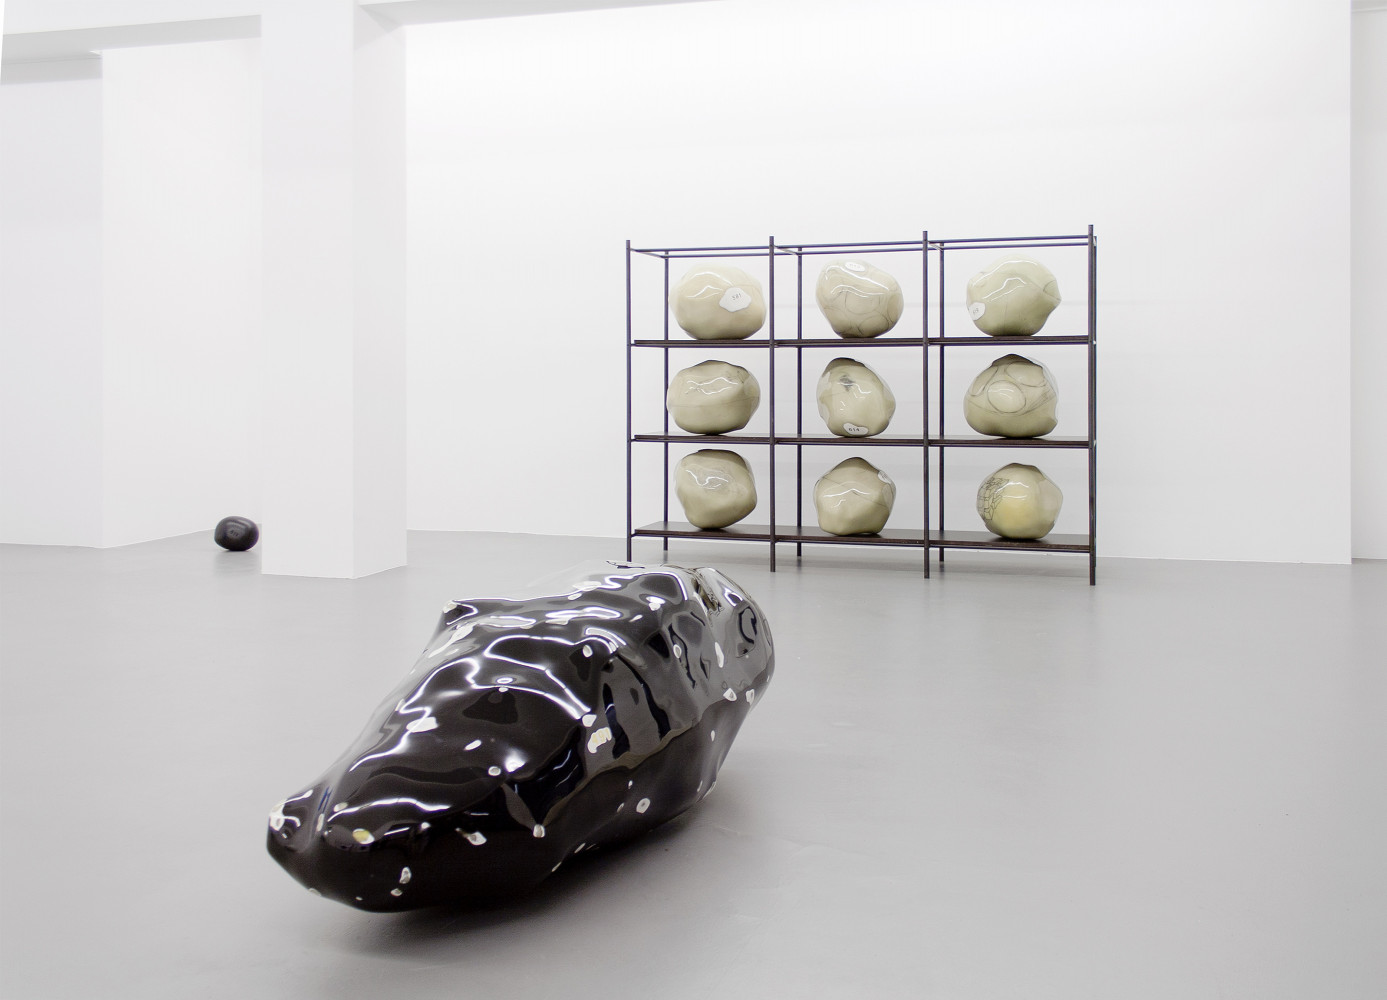 Wilhelm Mundt, ‘Klumpen’, Installationsansicht, Buchmann Galerie, 2015